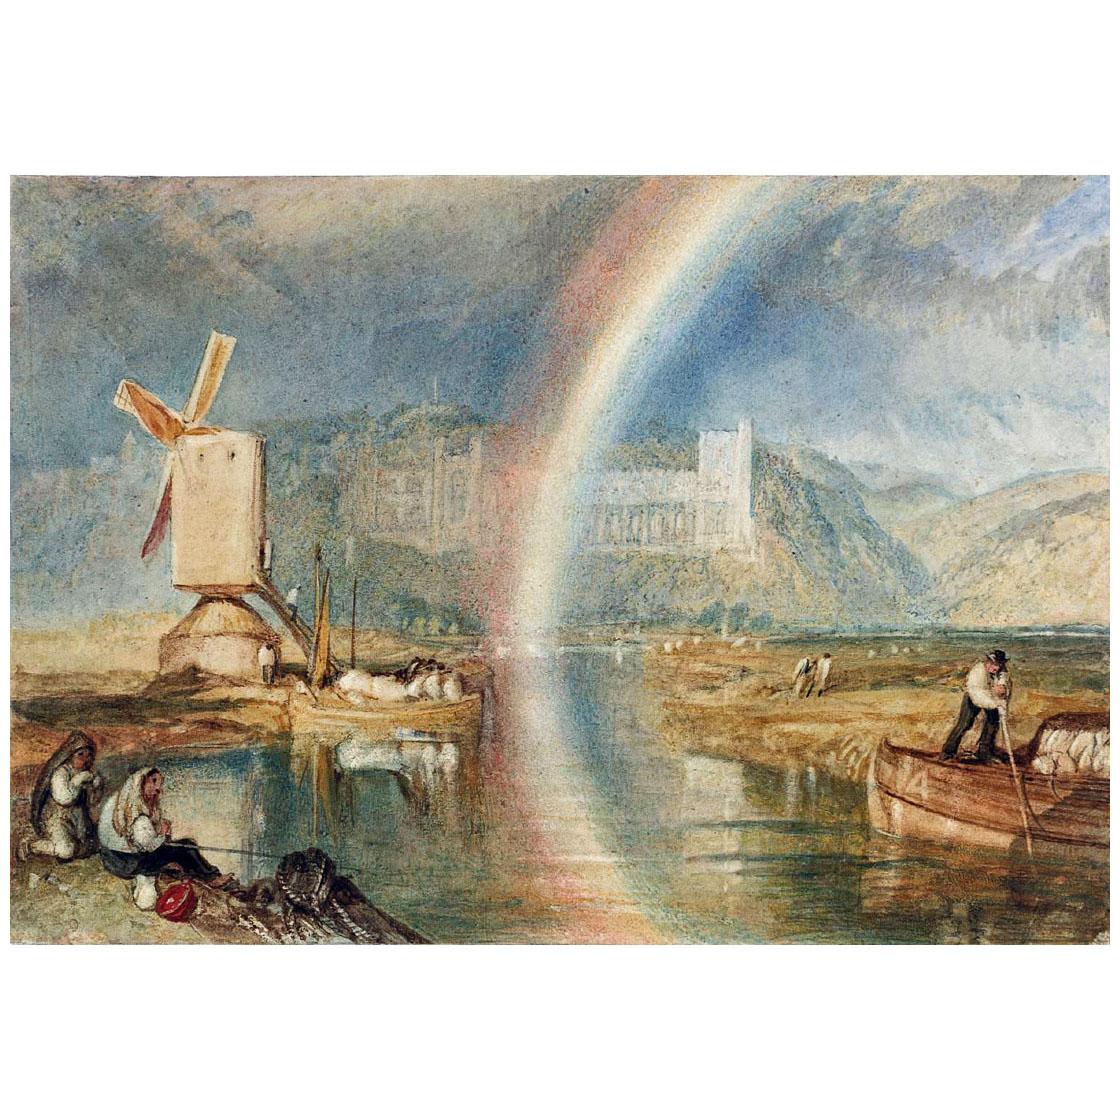 William Turner. Arundel Castle with Rainbow. 1824. British Museum